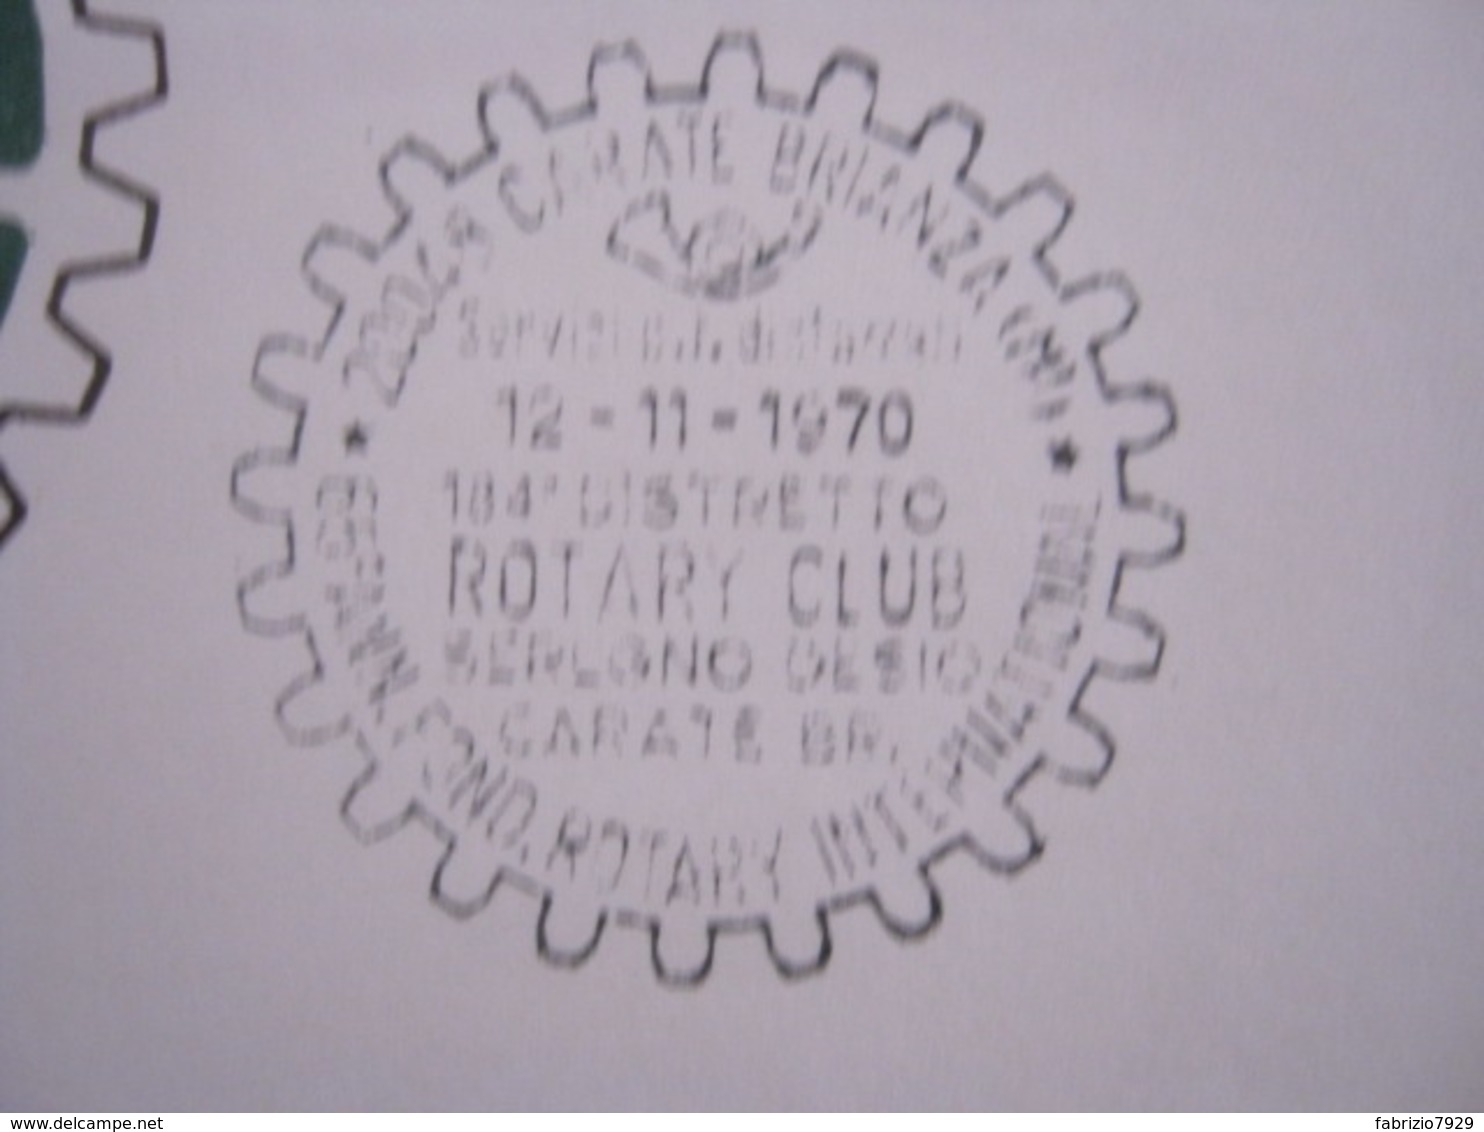 A.09 ITALIA ANNULLO - 1970 CARATE BRIANZA MILANO SEREGNO DESIO 65 ANNI ROTARY INTERNATIONAL - Rotary, Lions Club